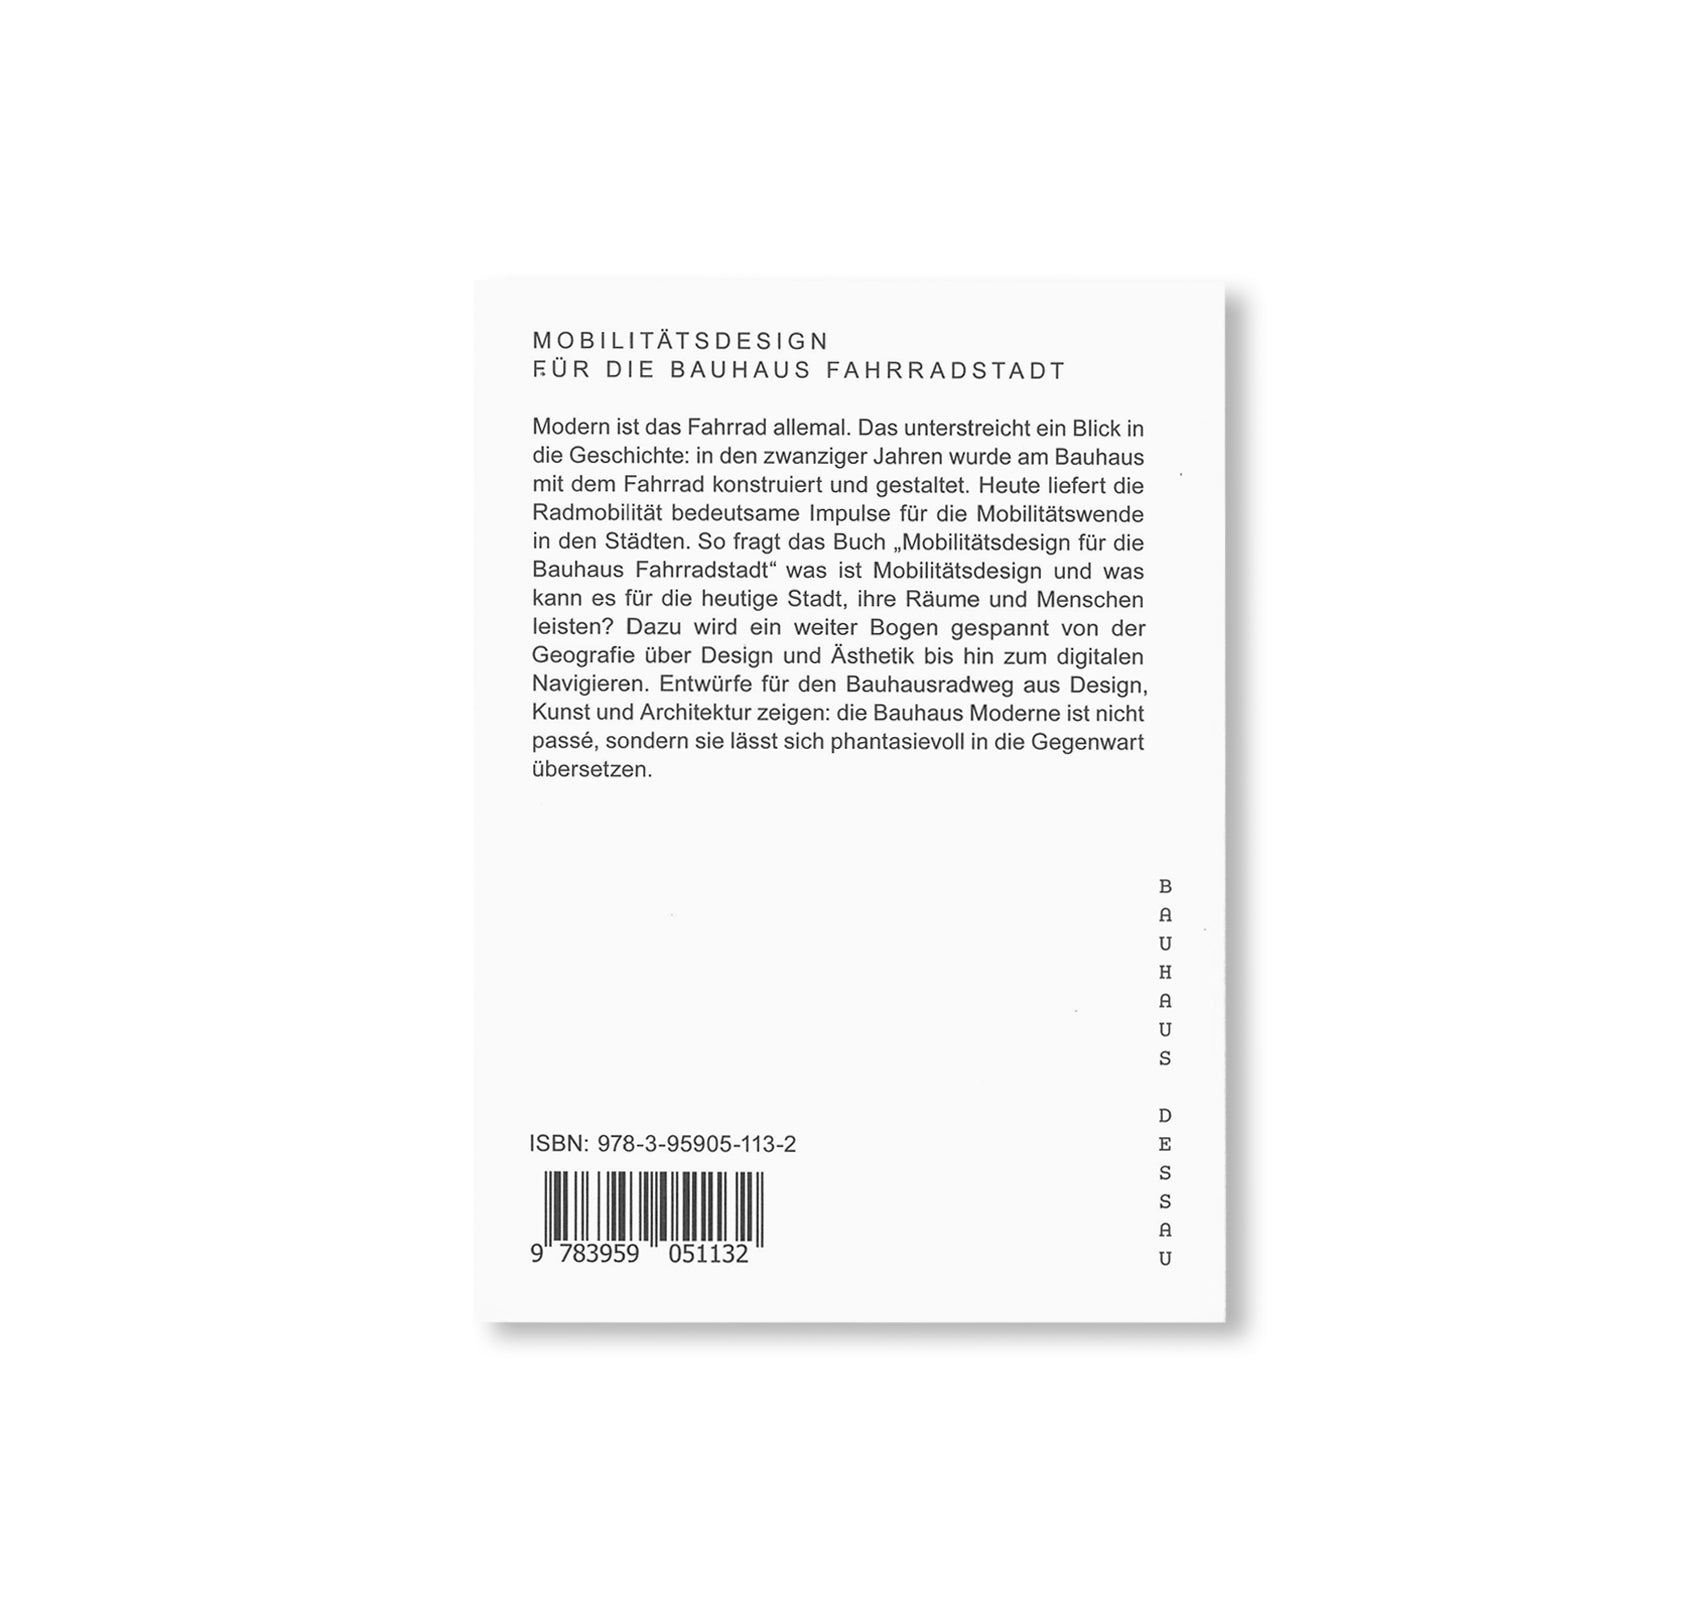 MOBILITÄTSDESIGN FÜR DIE BAUHAUS FAHRRADSTADT - Bauhaus Paperback 19 - by Stiftung Bauhaus Dessau [GERMAN EDITION]